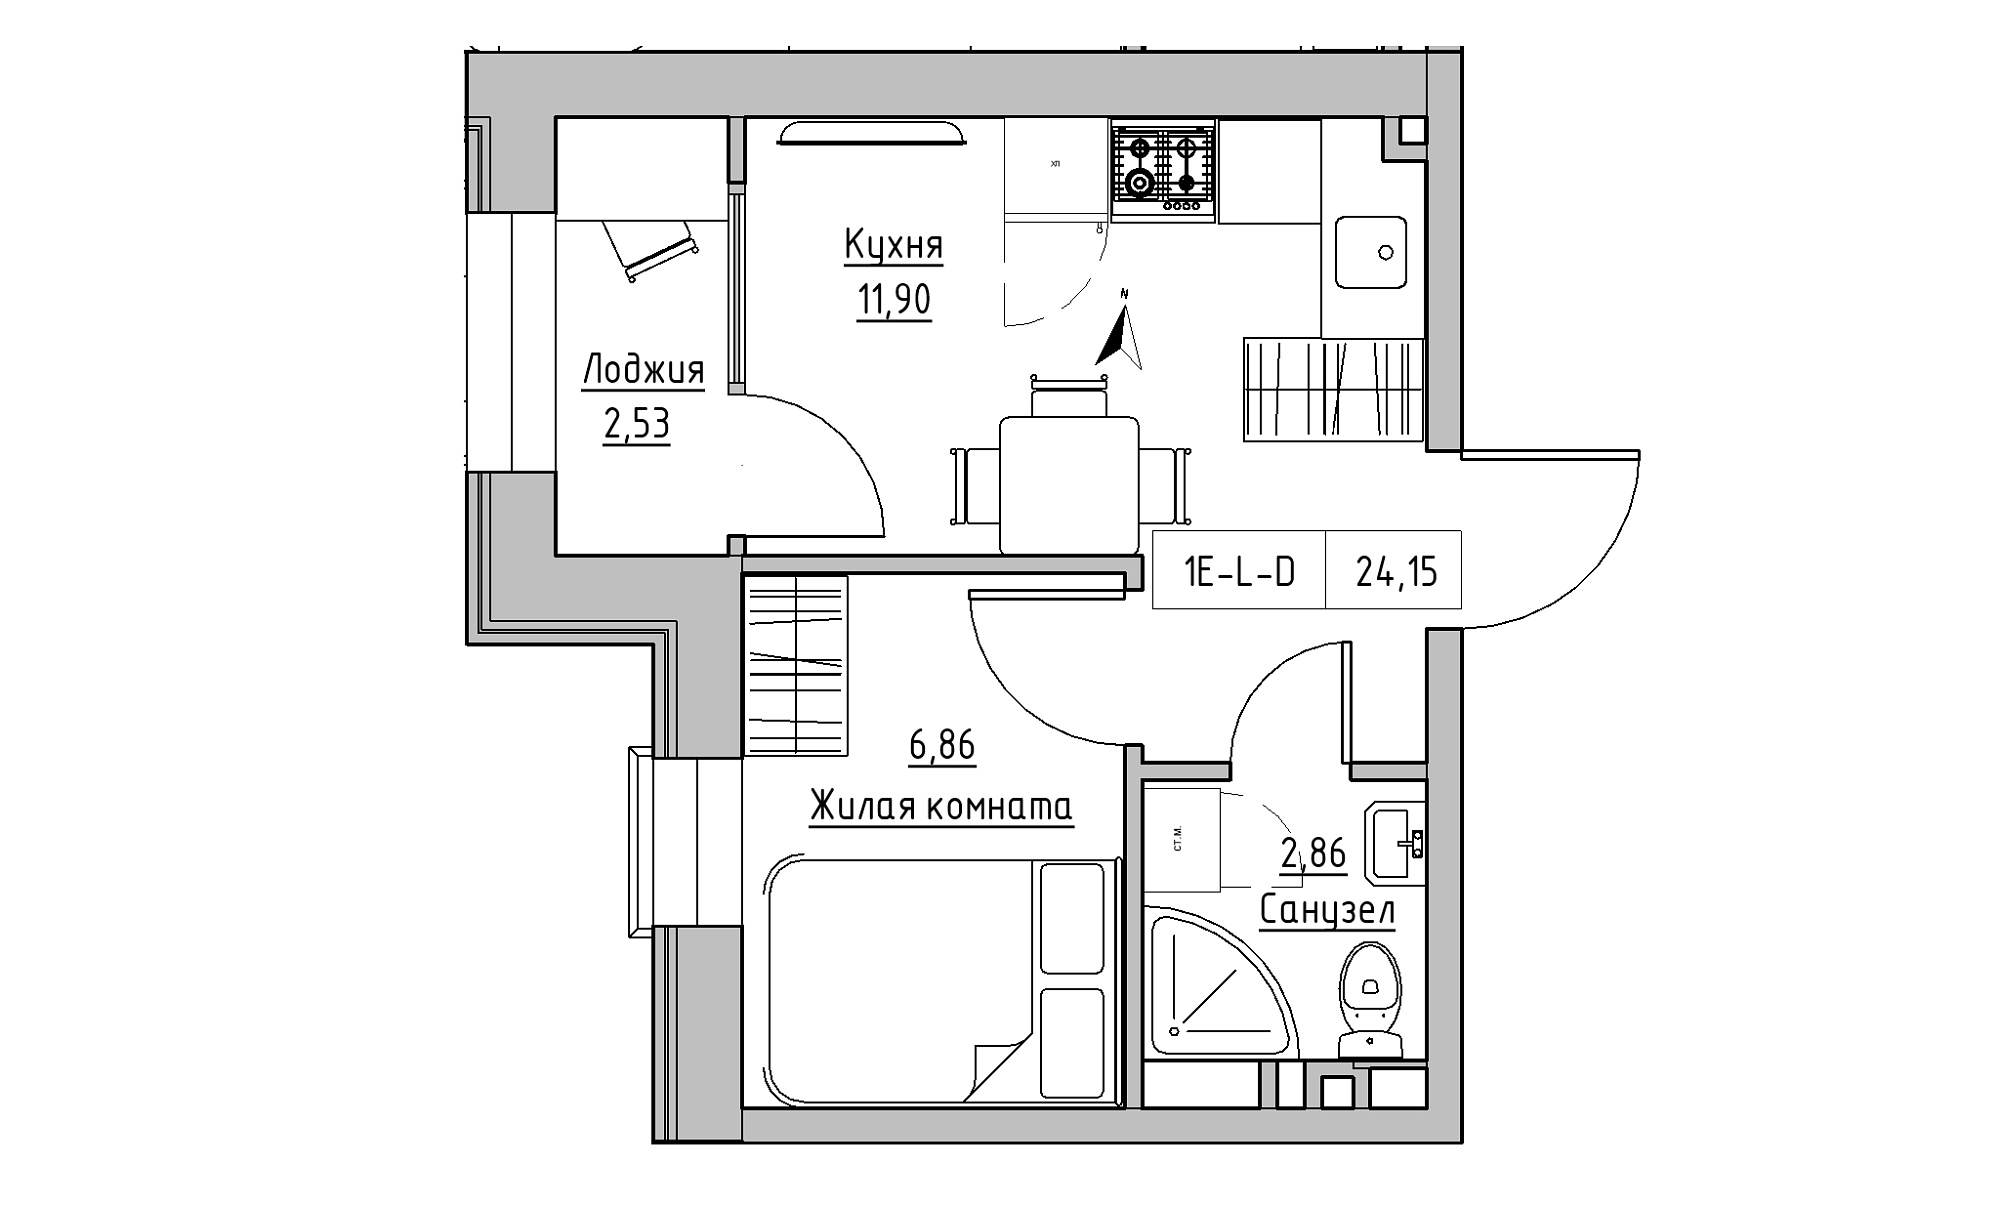 Планировка 1-к квартира площей 24.15м2, KS-023-02/0001.